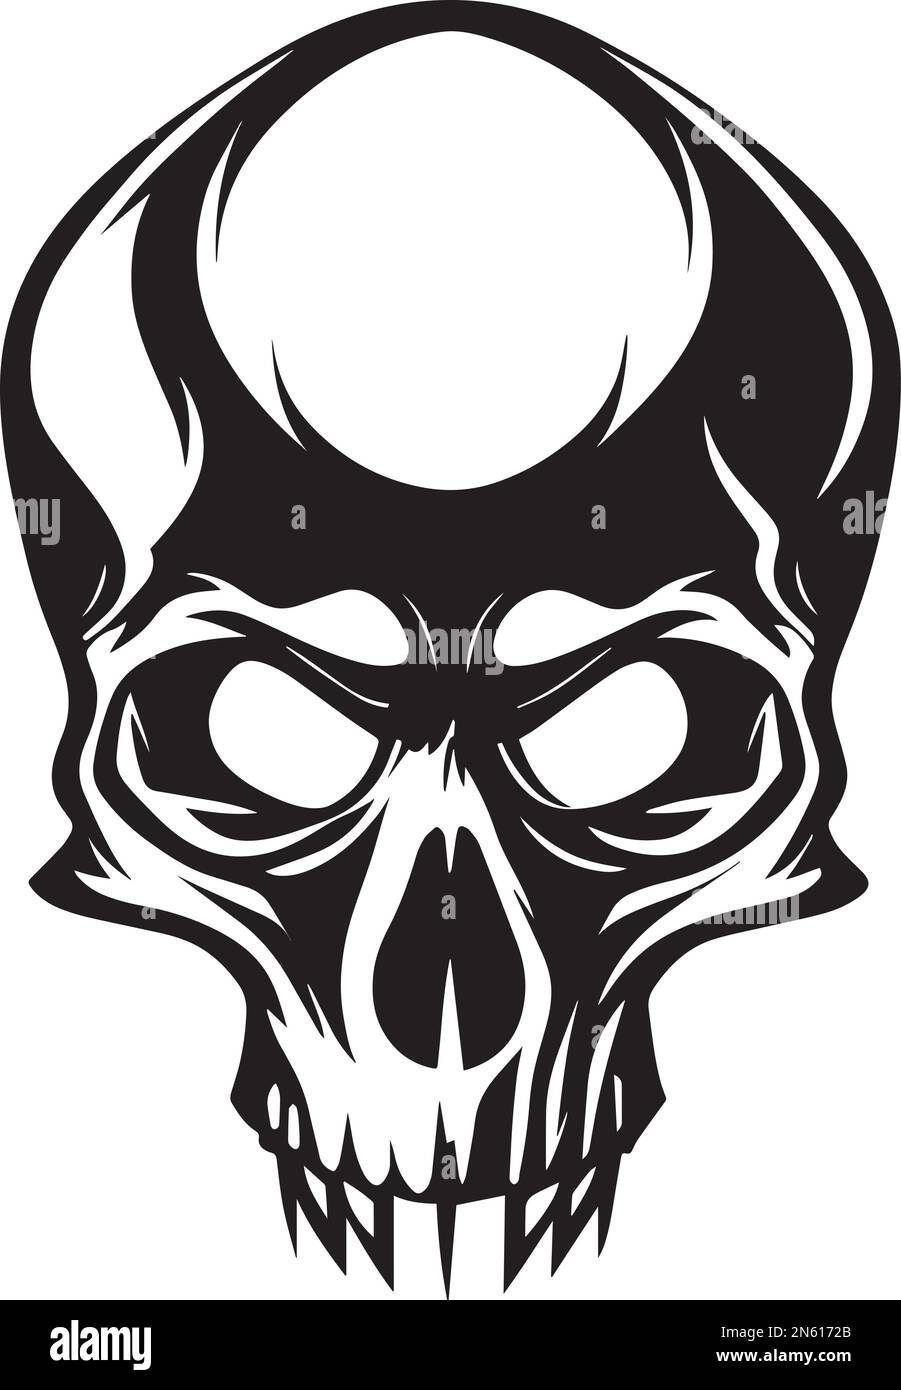 Illustration Of Skull Monochrome Logo Design Stock Vector Image & Art ...